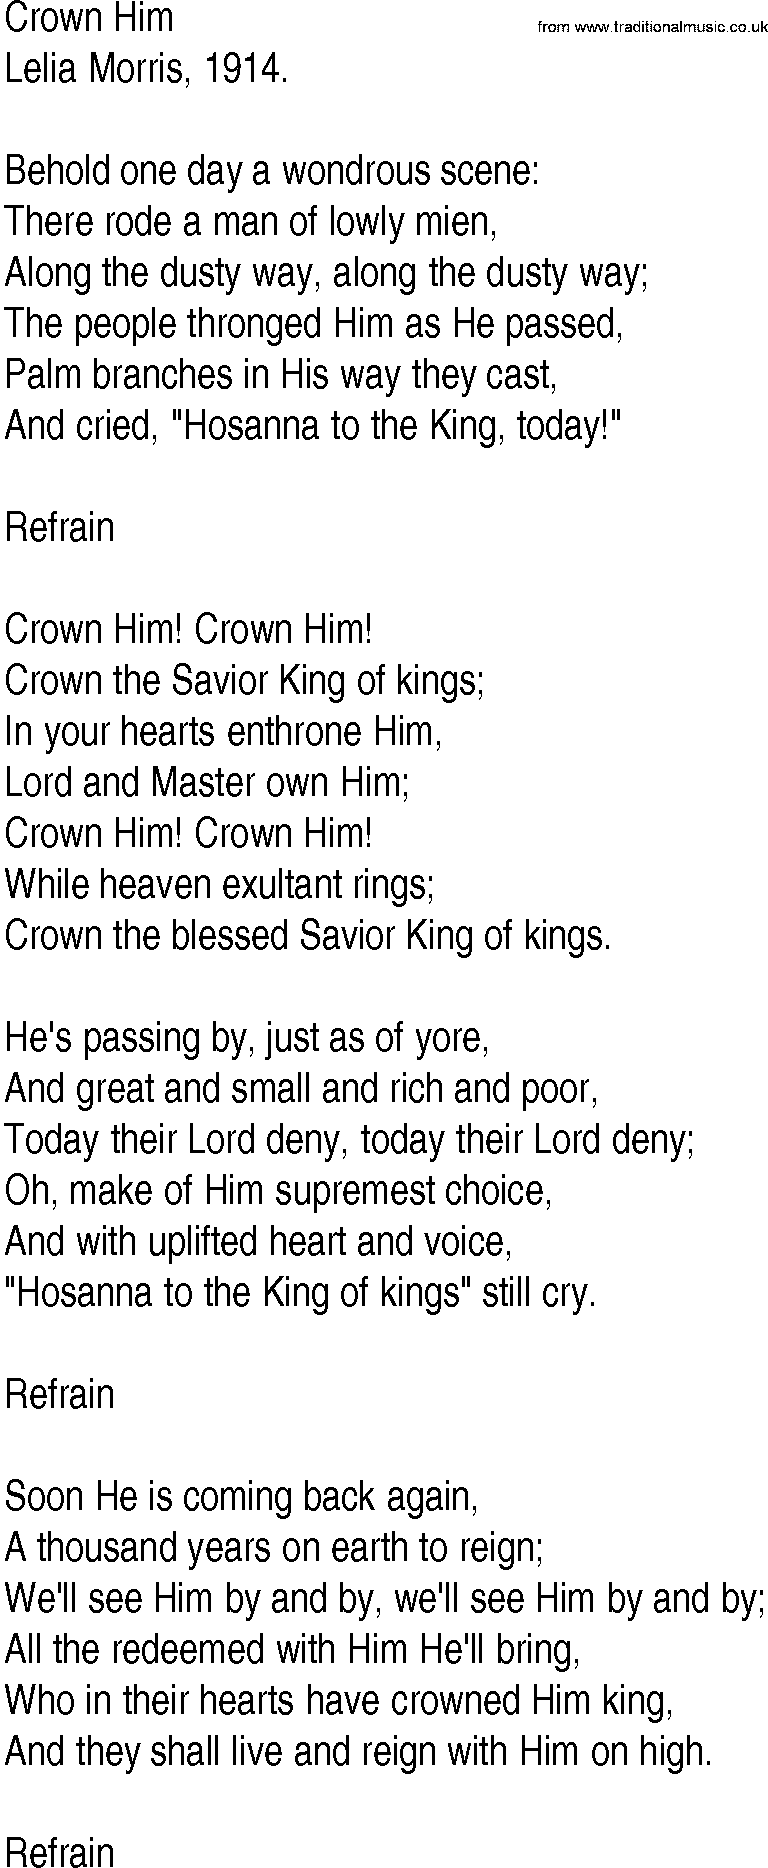 Hymn and Gospel Song: Crown Him by Lelia Morris lyrics